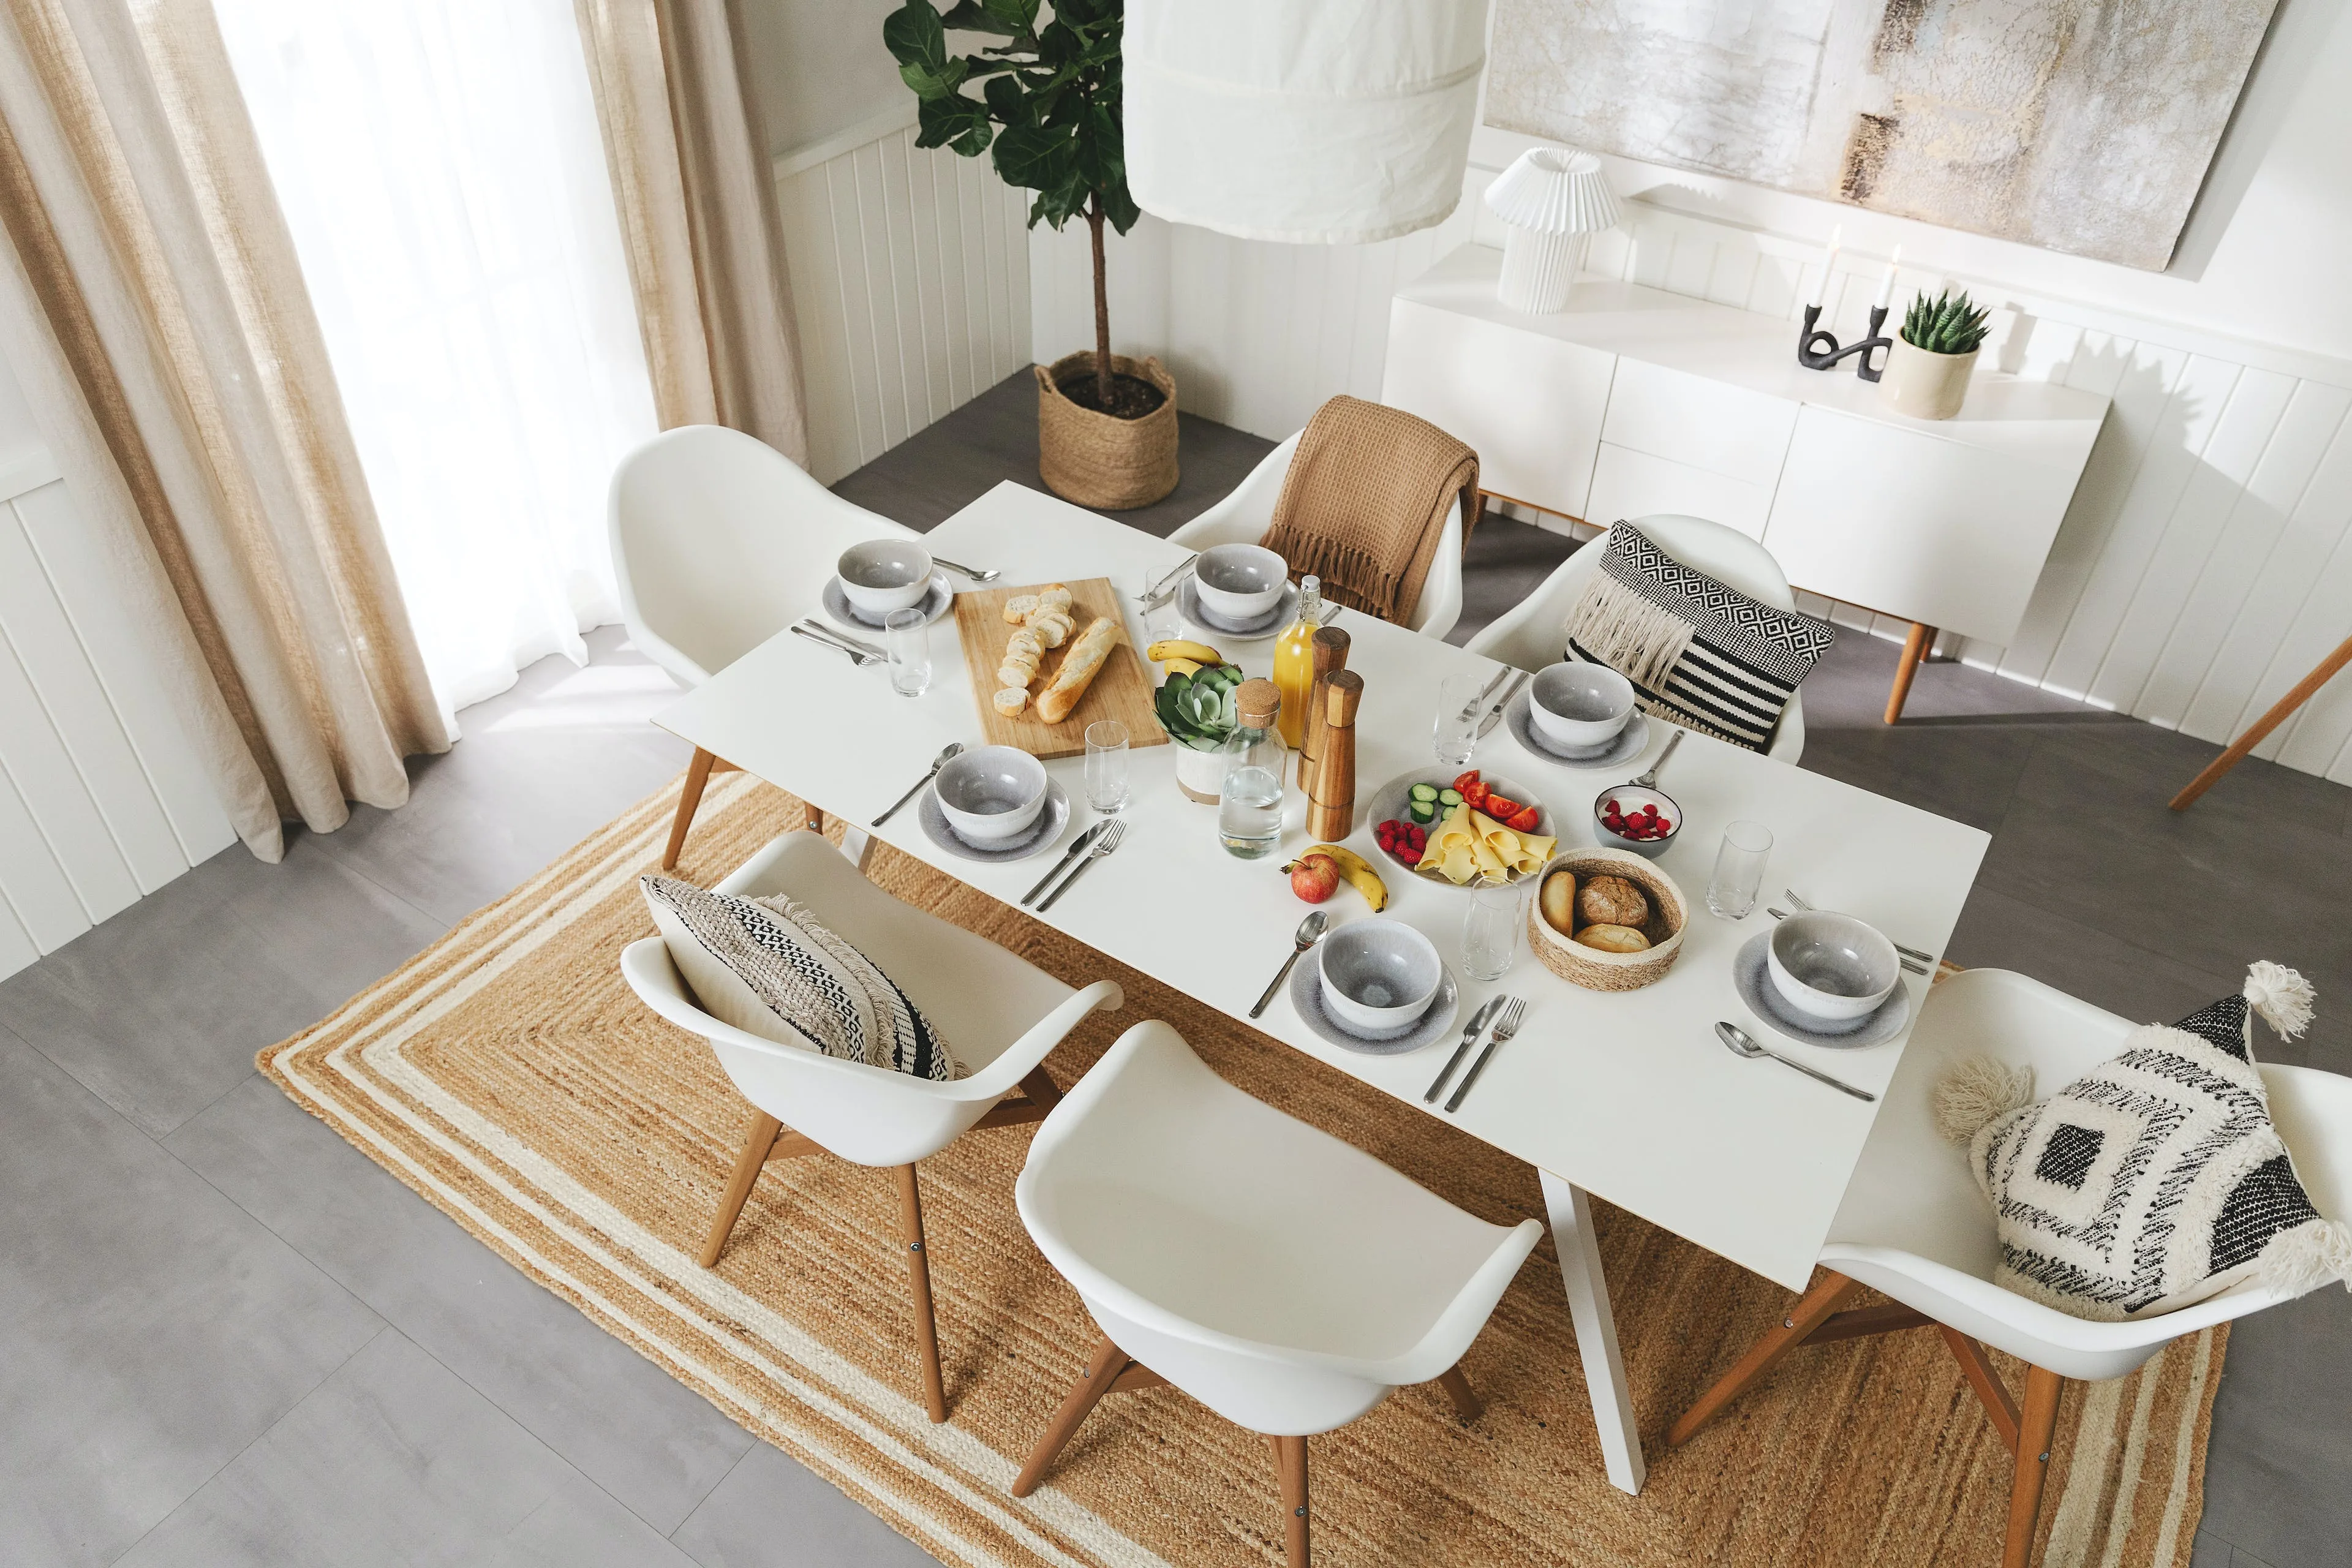 Aufnahme von oben auf den gesamten, weißen Tisch in einem Esszimmer, der für einen Frühstücksbrunch gedeckt ist mit Aufschnitt, Brötchen, Obst und Gemüse